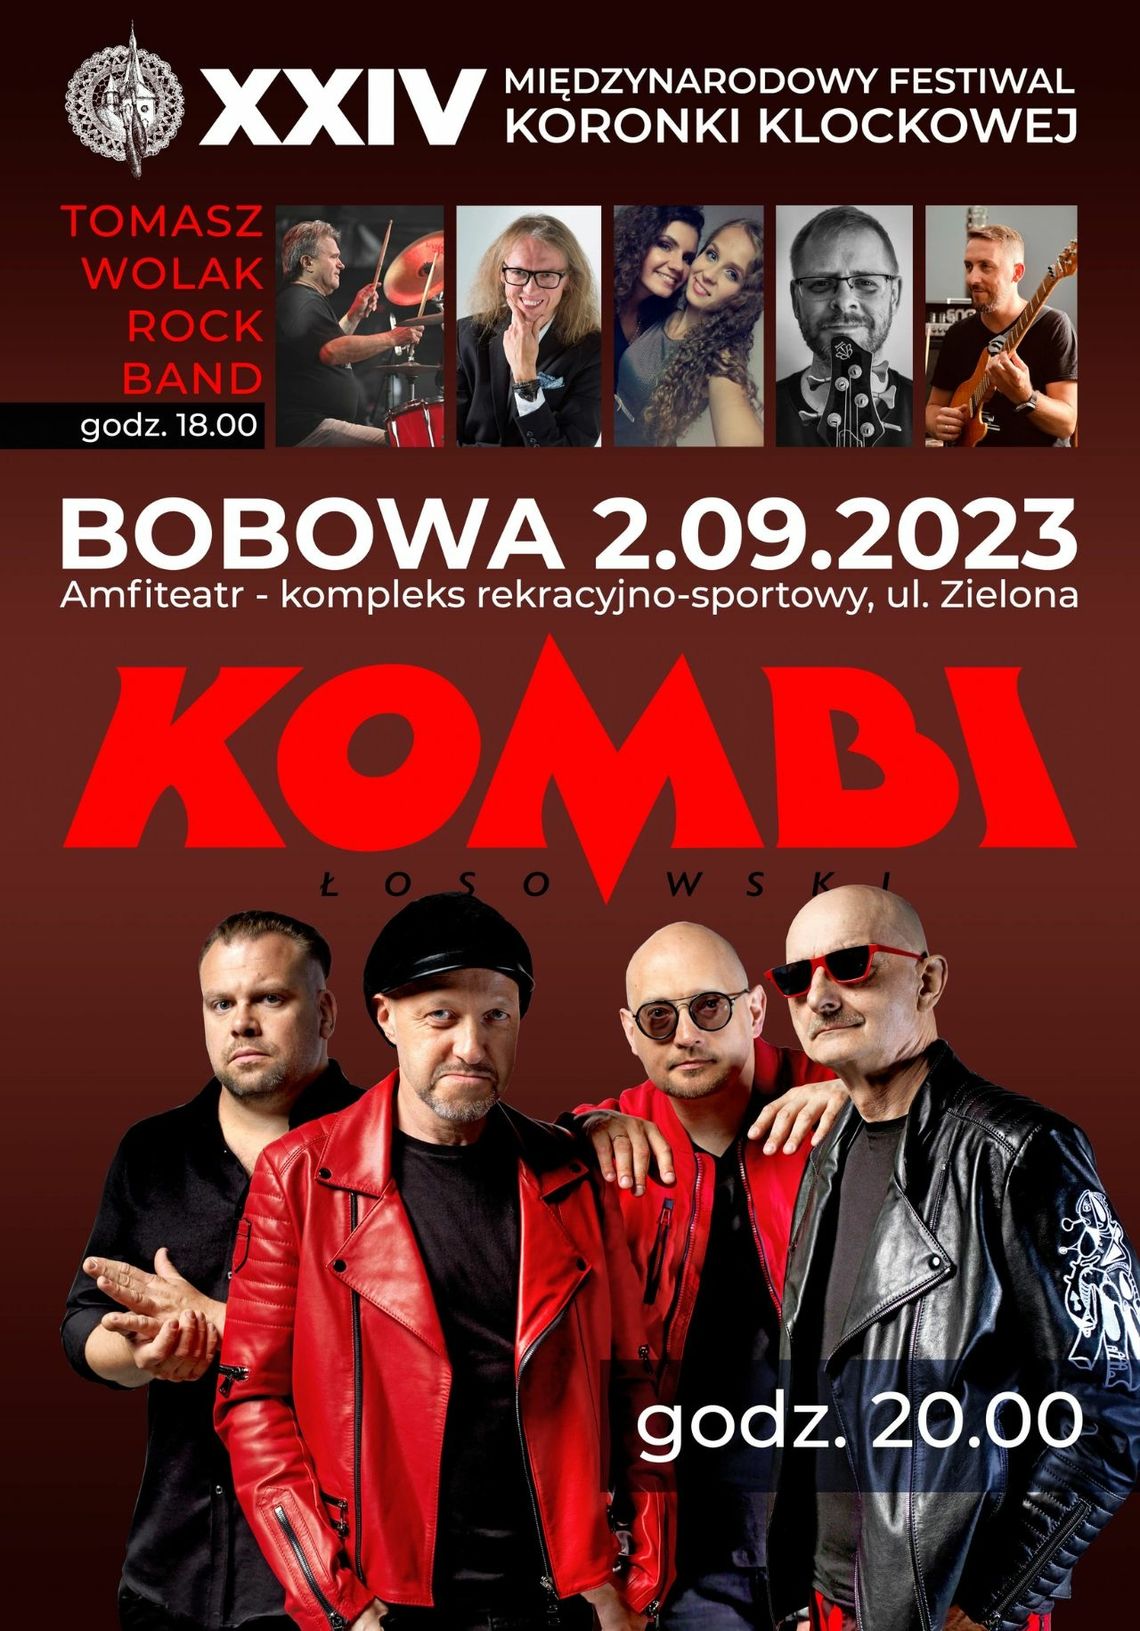 Koncert zespołu KOMBI Łosowski – Bobowa | halogorlice.info